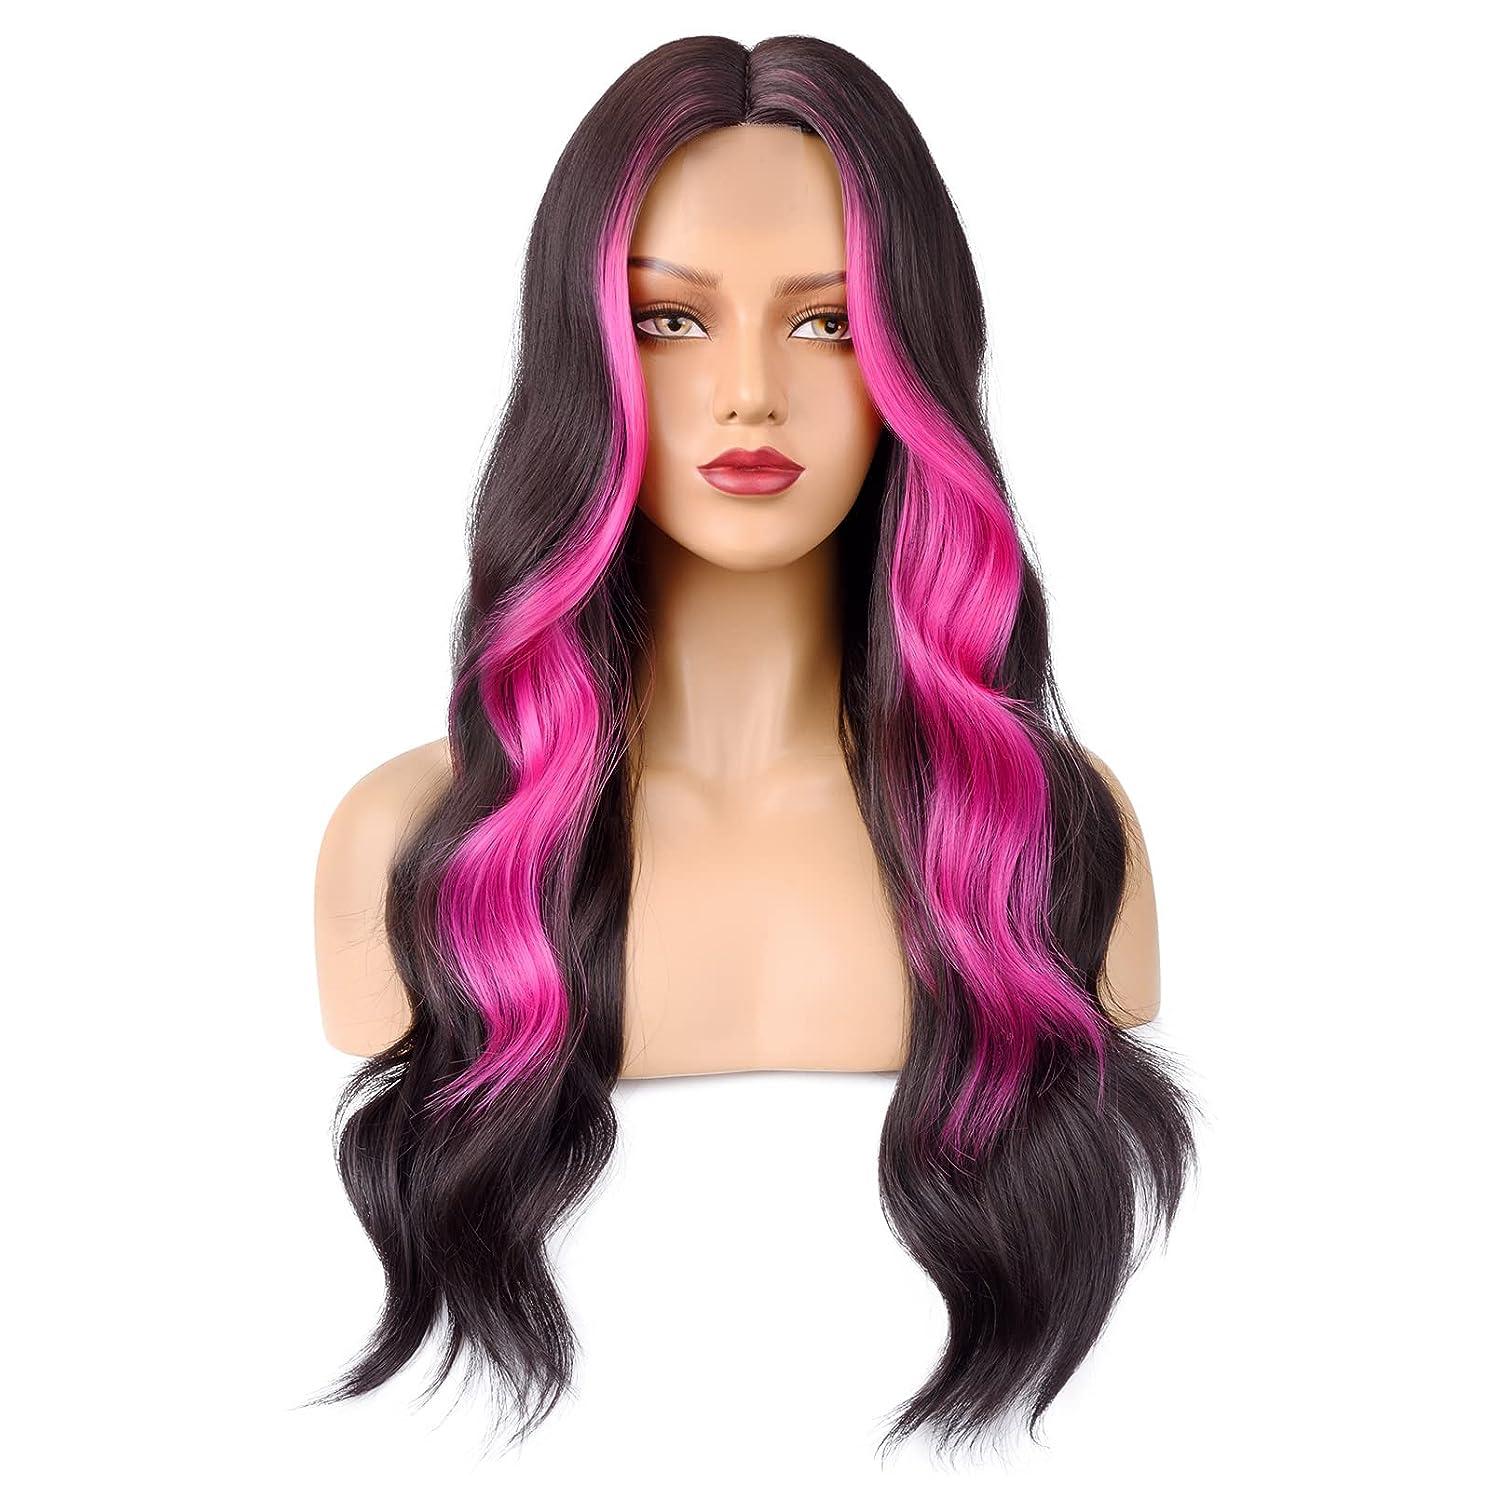 hot pink hair streaks